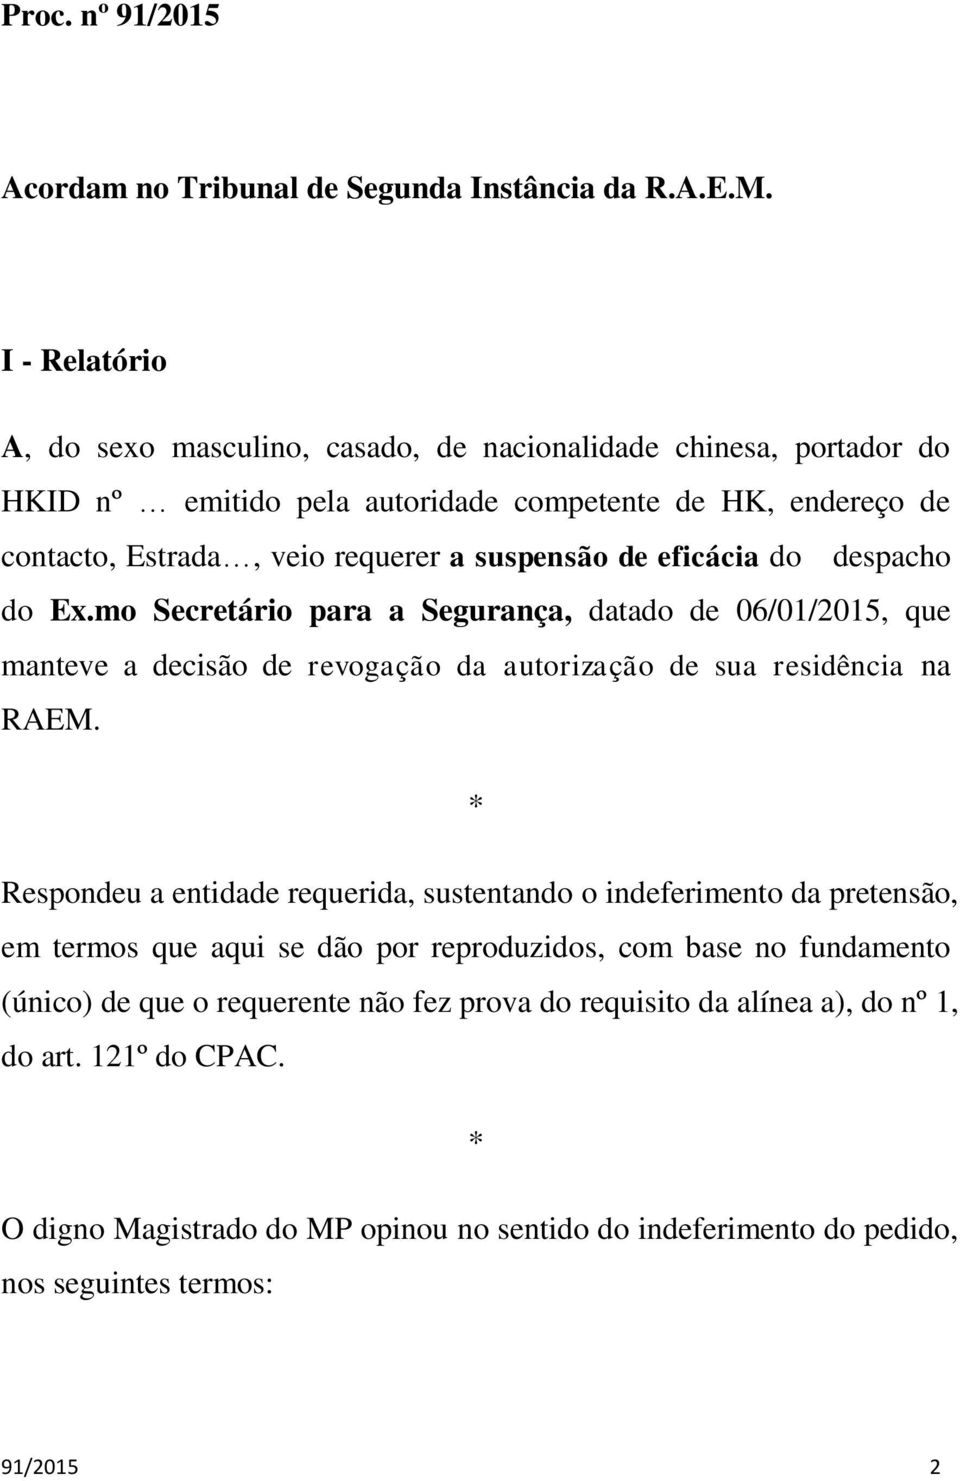 eficácia do despacho do Ex.mo Secretário para a Segurança, datado de 06/01/2015, que manteve a decisão de revogação da autorização de sua residência na RAEM.